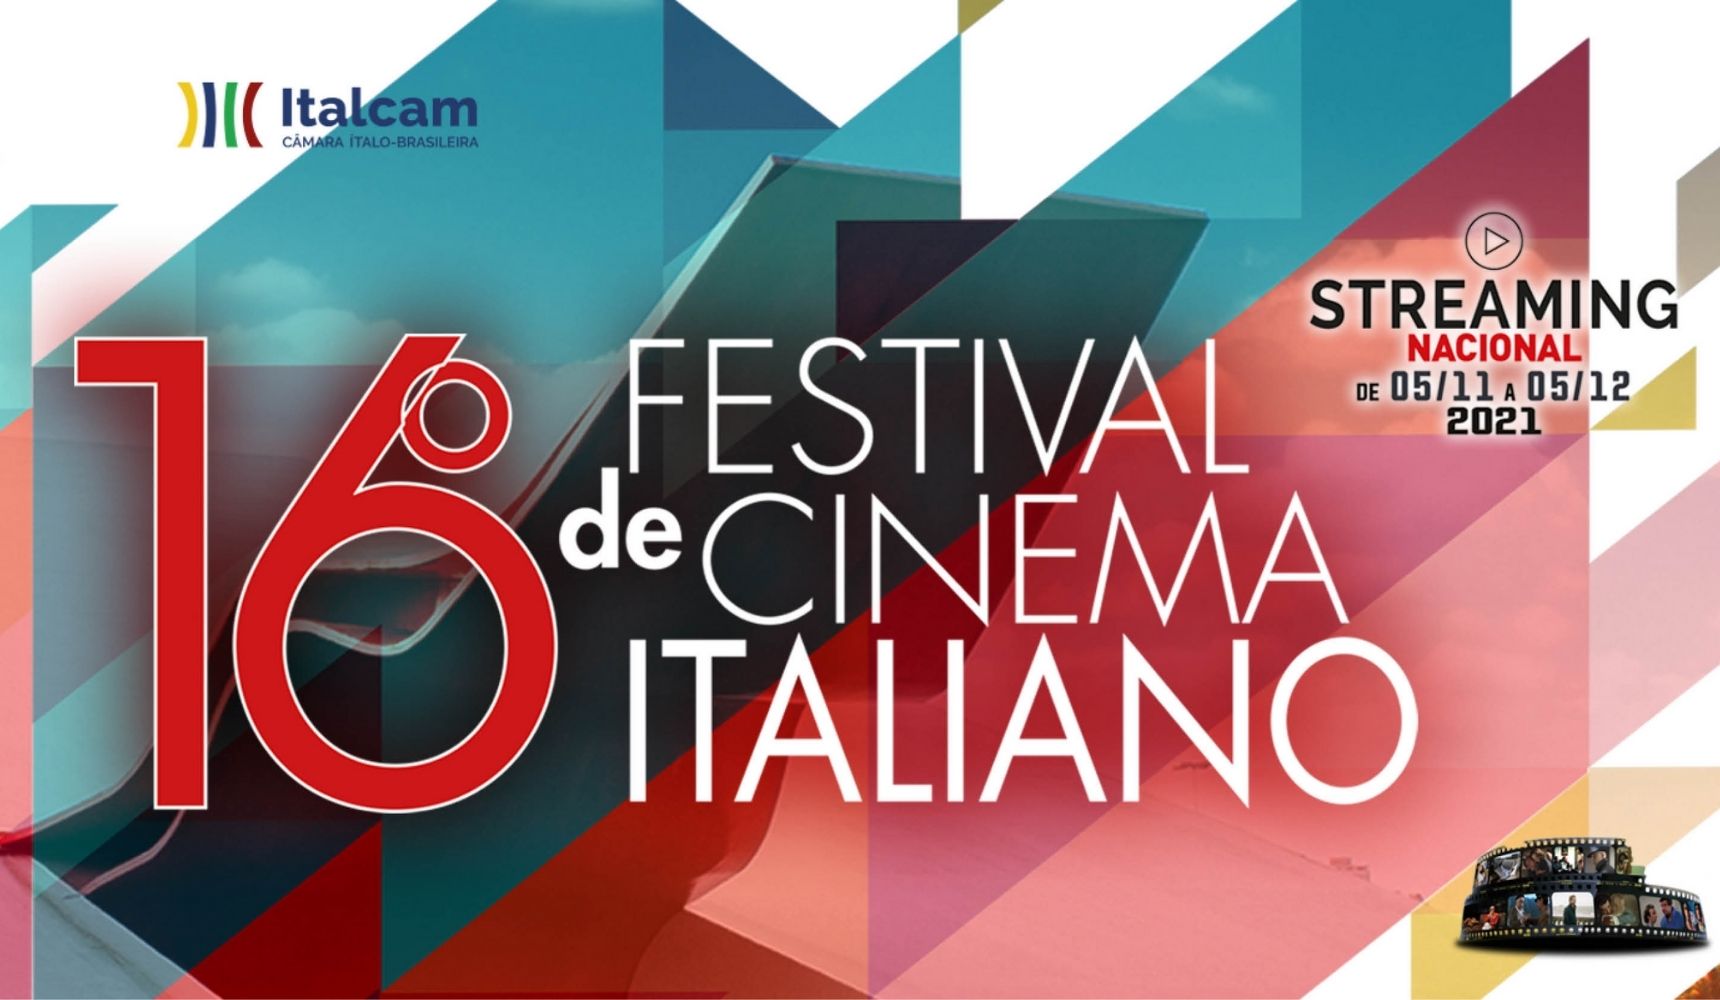 16° Festival do Cinema Italiano promove streaming gratuito